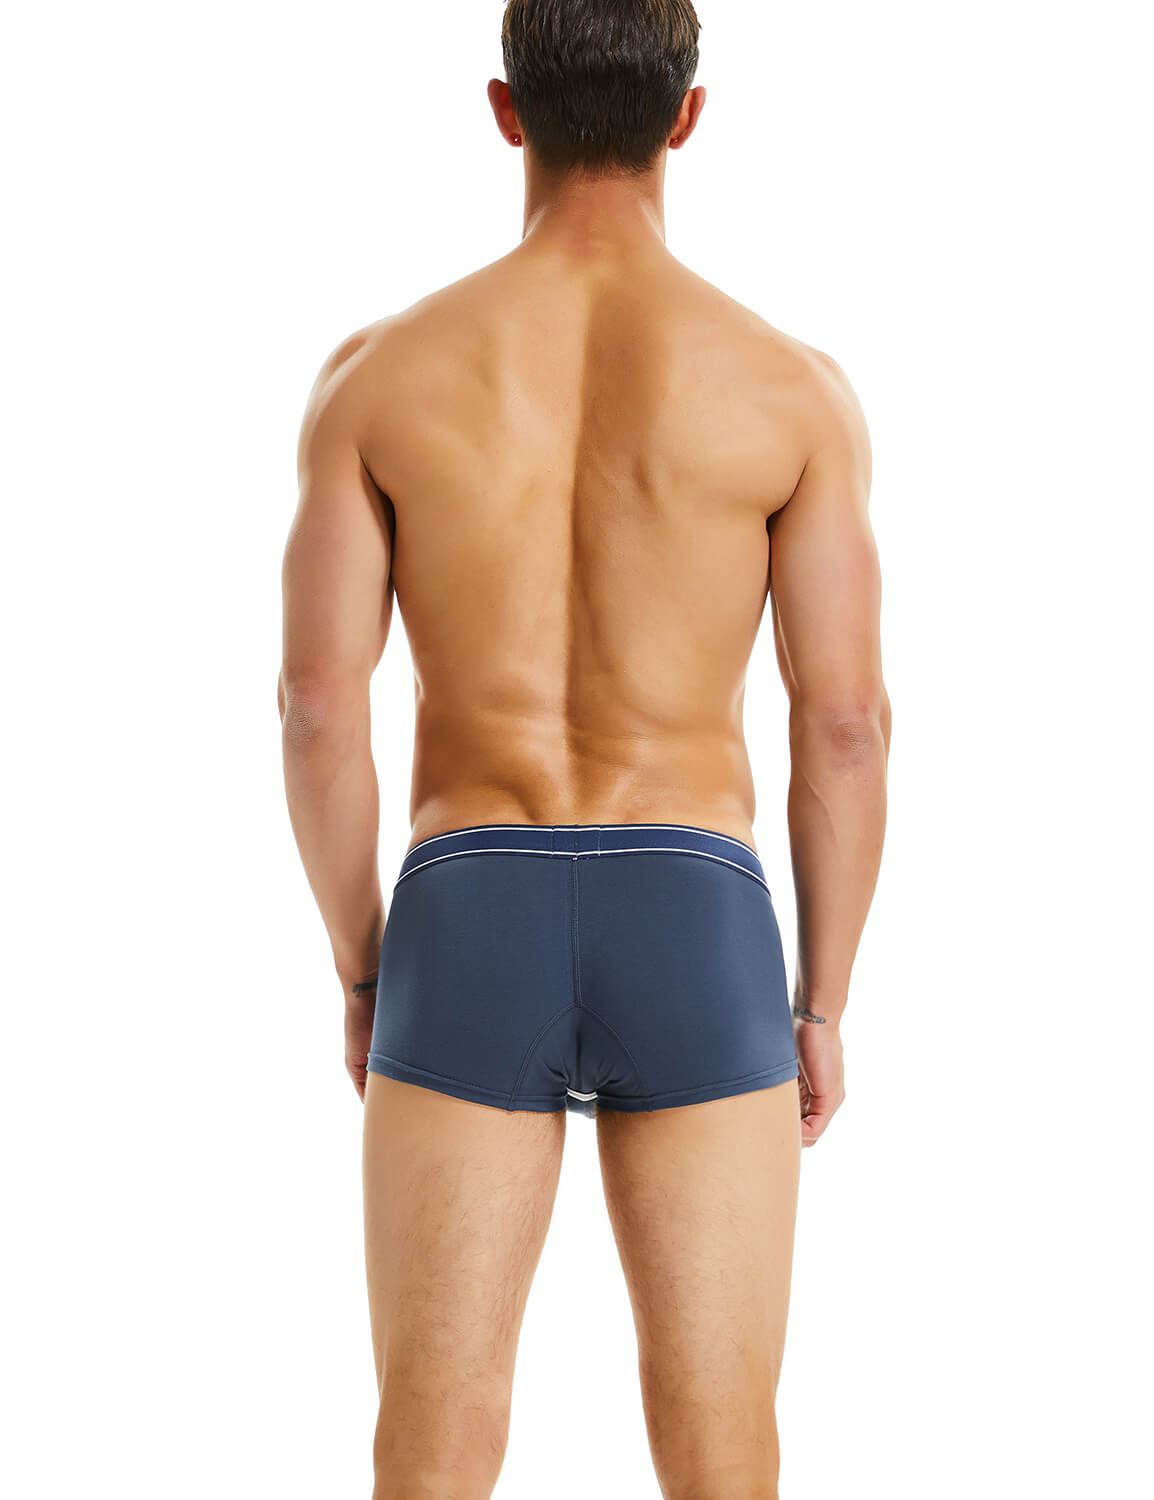 SEOBEAN Mens Low Rise Sexy Nano Trunks Boxer Briefs Underwear 10208 –  SEOBEAN®